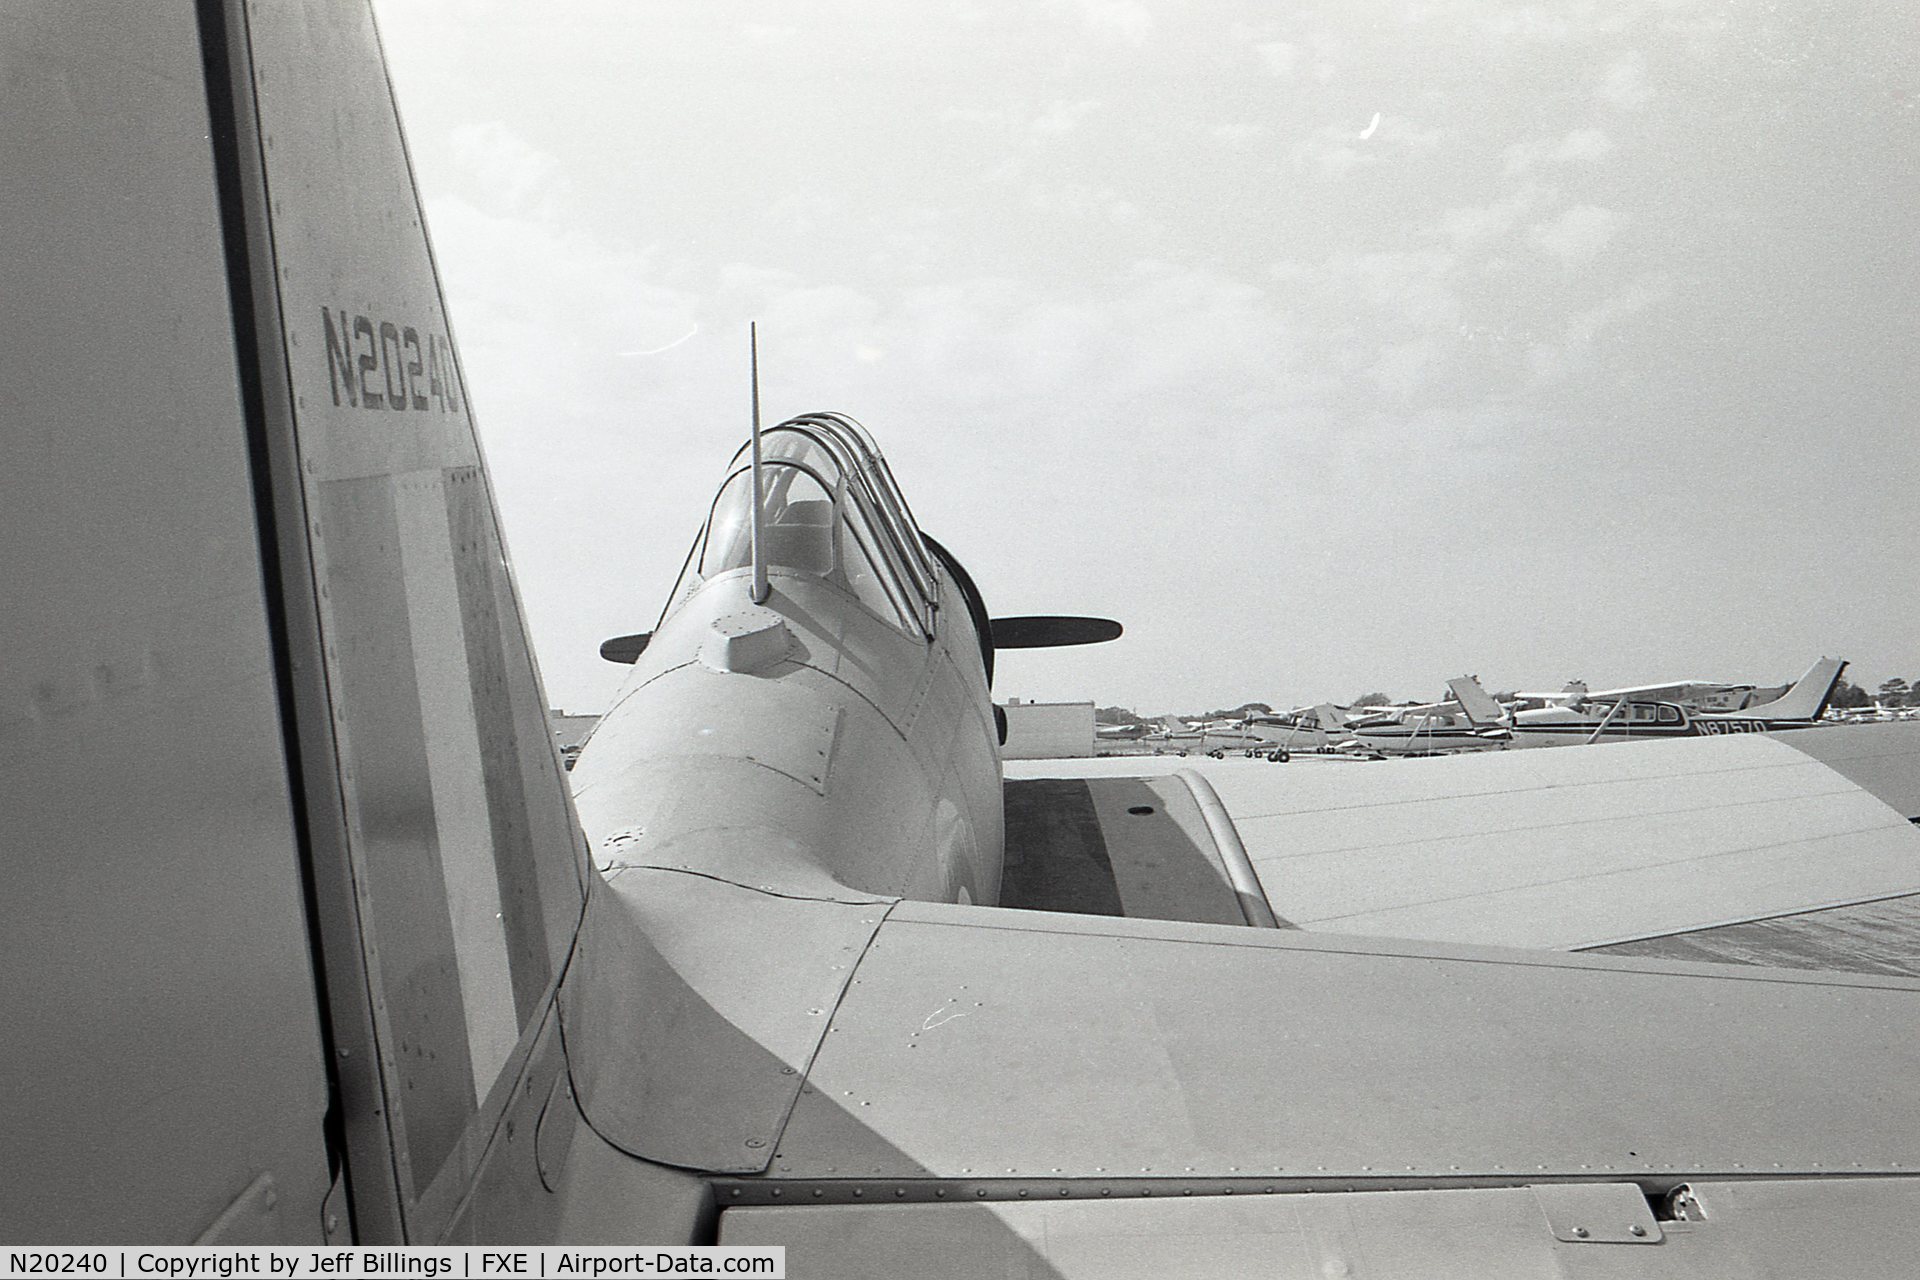 N20240, 1943 North American Harvard II C/N 81-4128, Taken at Ft. Lauderdale Exec Airport maybe 1978 - 1979